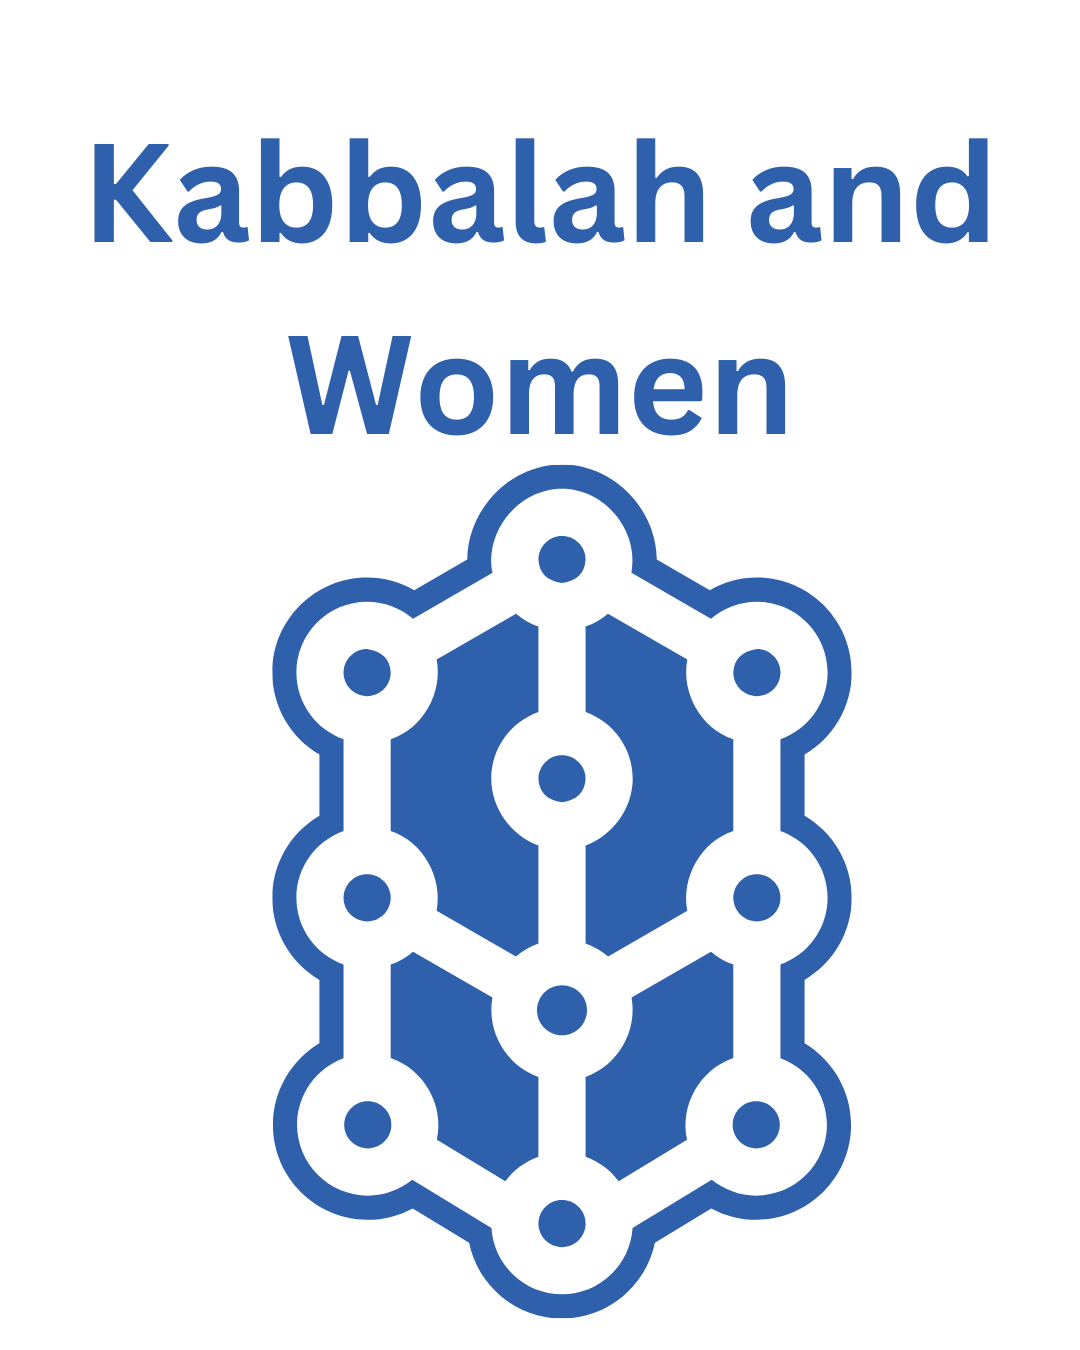 Kabbalah and Women